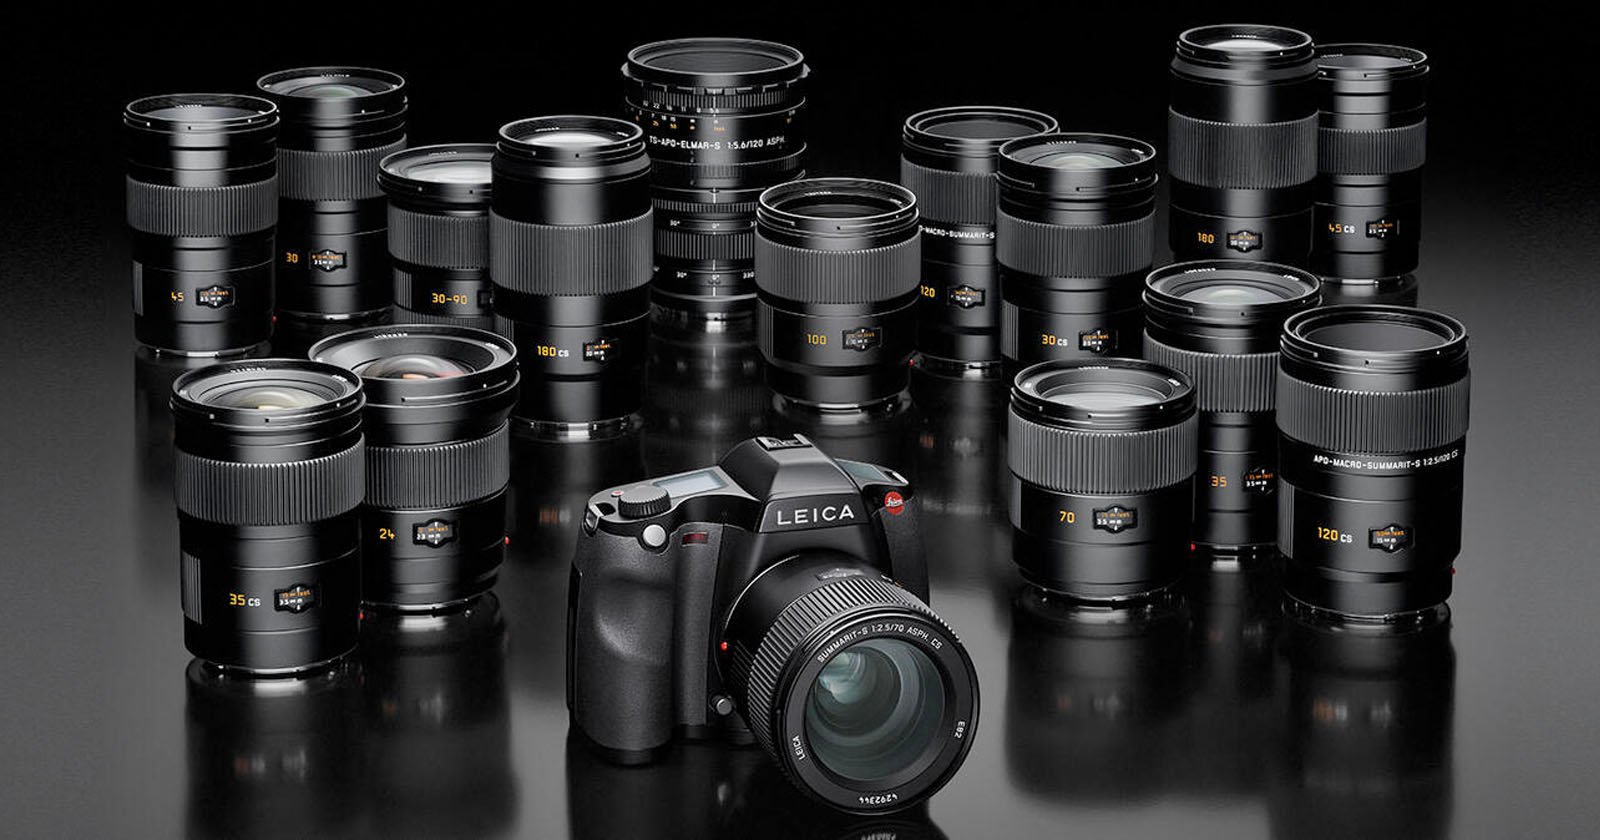  leica will deliver mirrorless medium format hybrid camera 